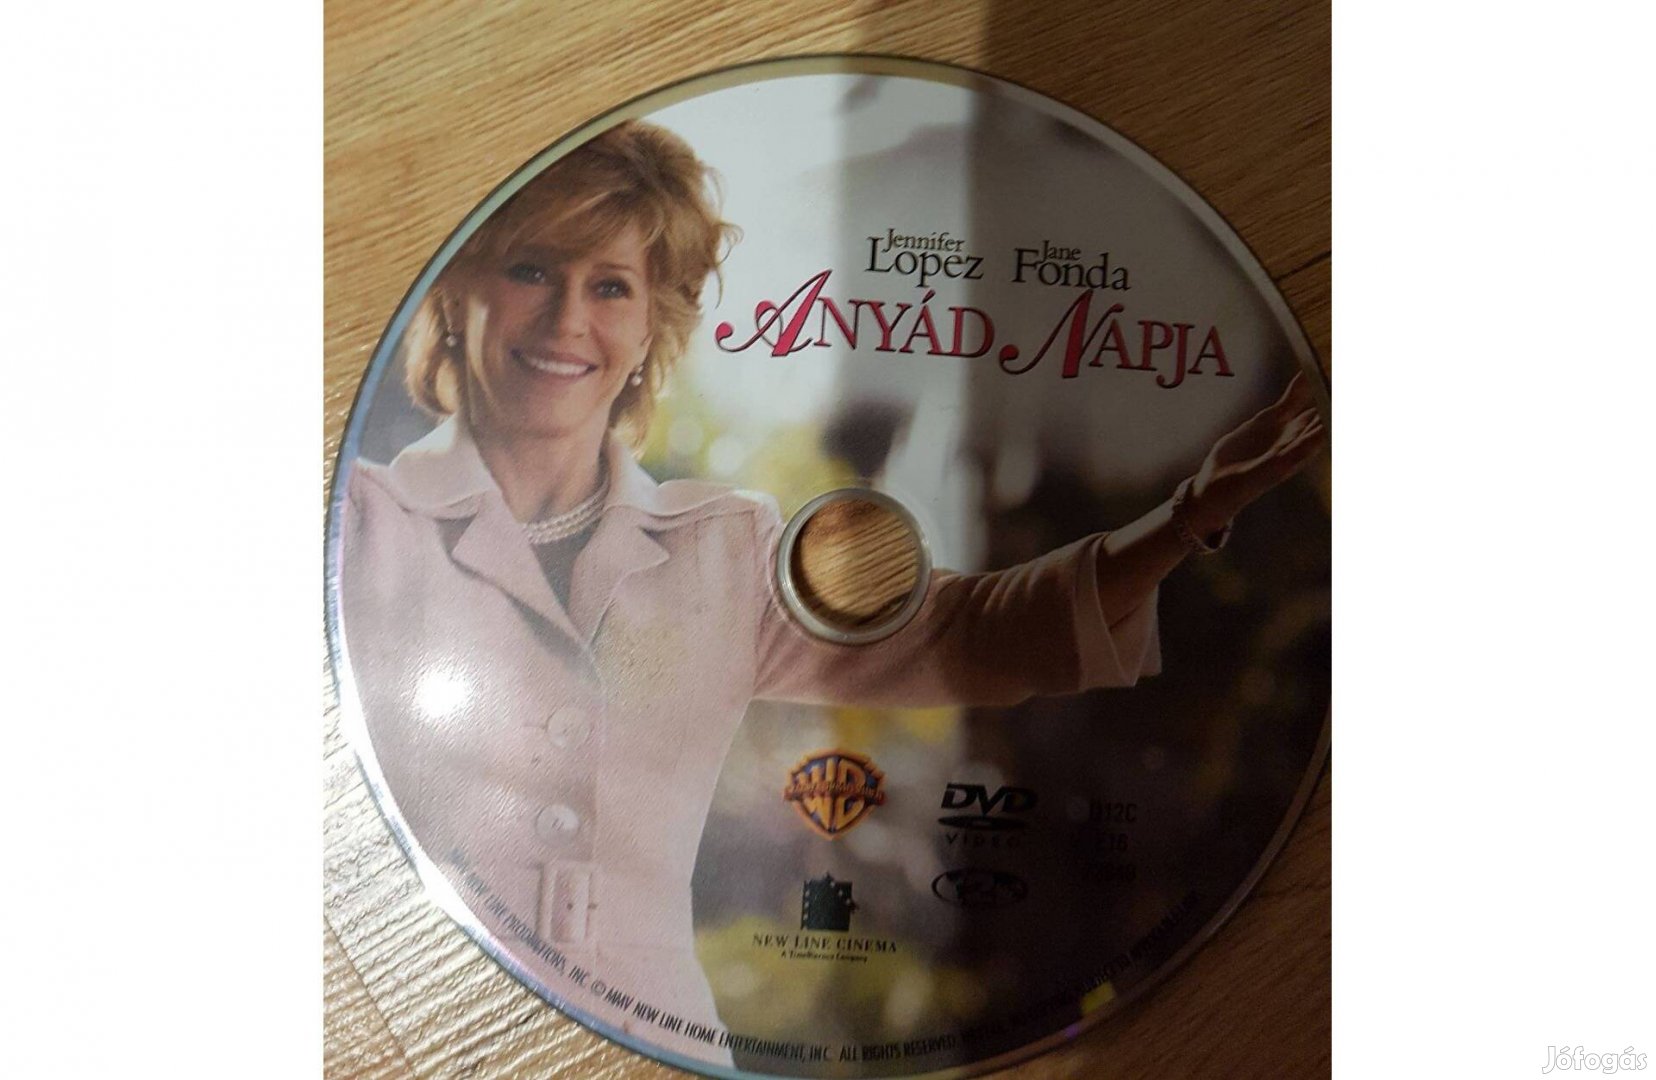 Anyád Napja (Jennifer Lopez, Jane Fonda) DVD